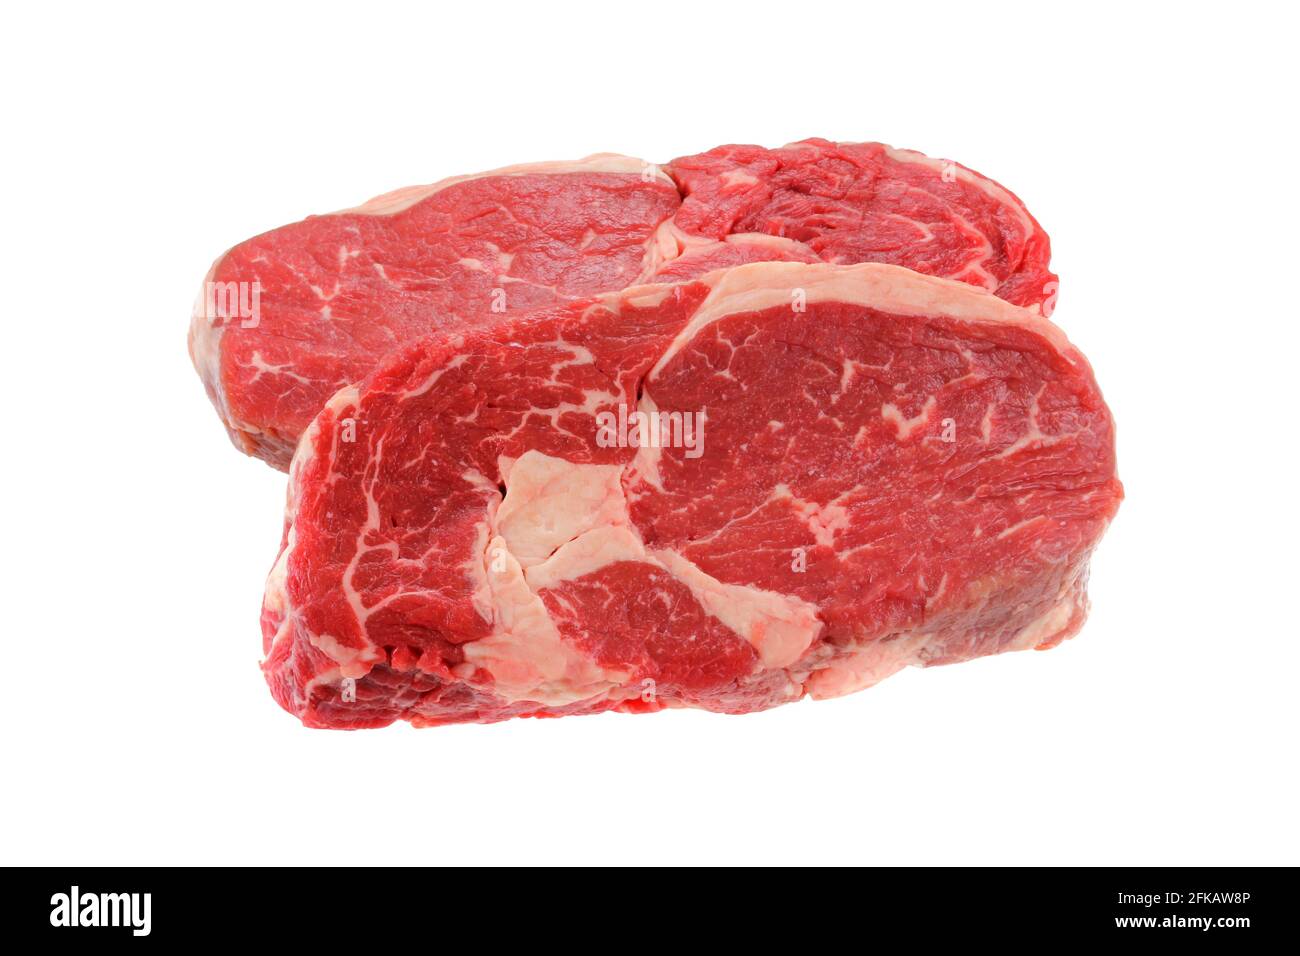 Un taglio di carne dalla parte posteriore : bistecca di Sirloin fresca, isolata su sfondo bianco Foto Stock